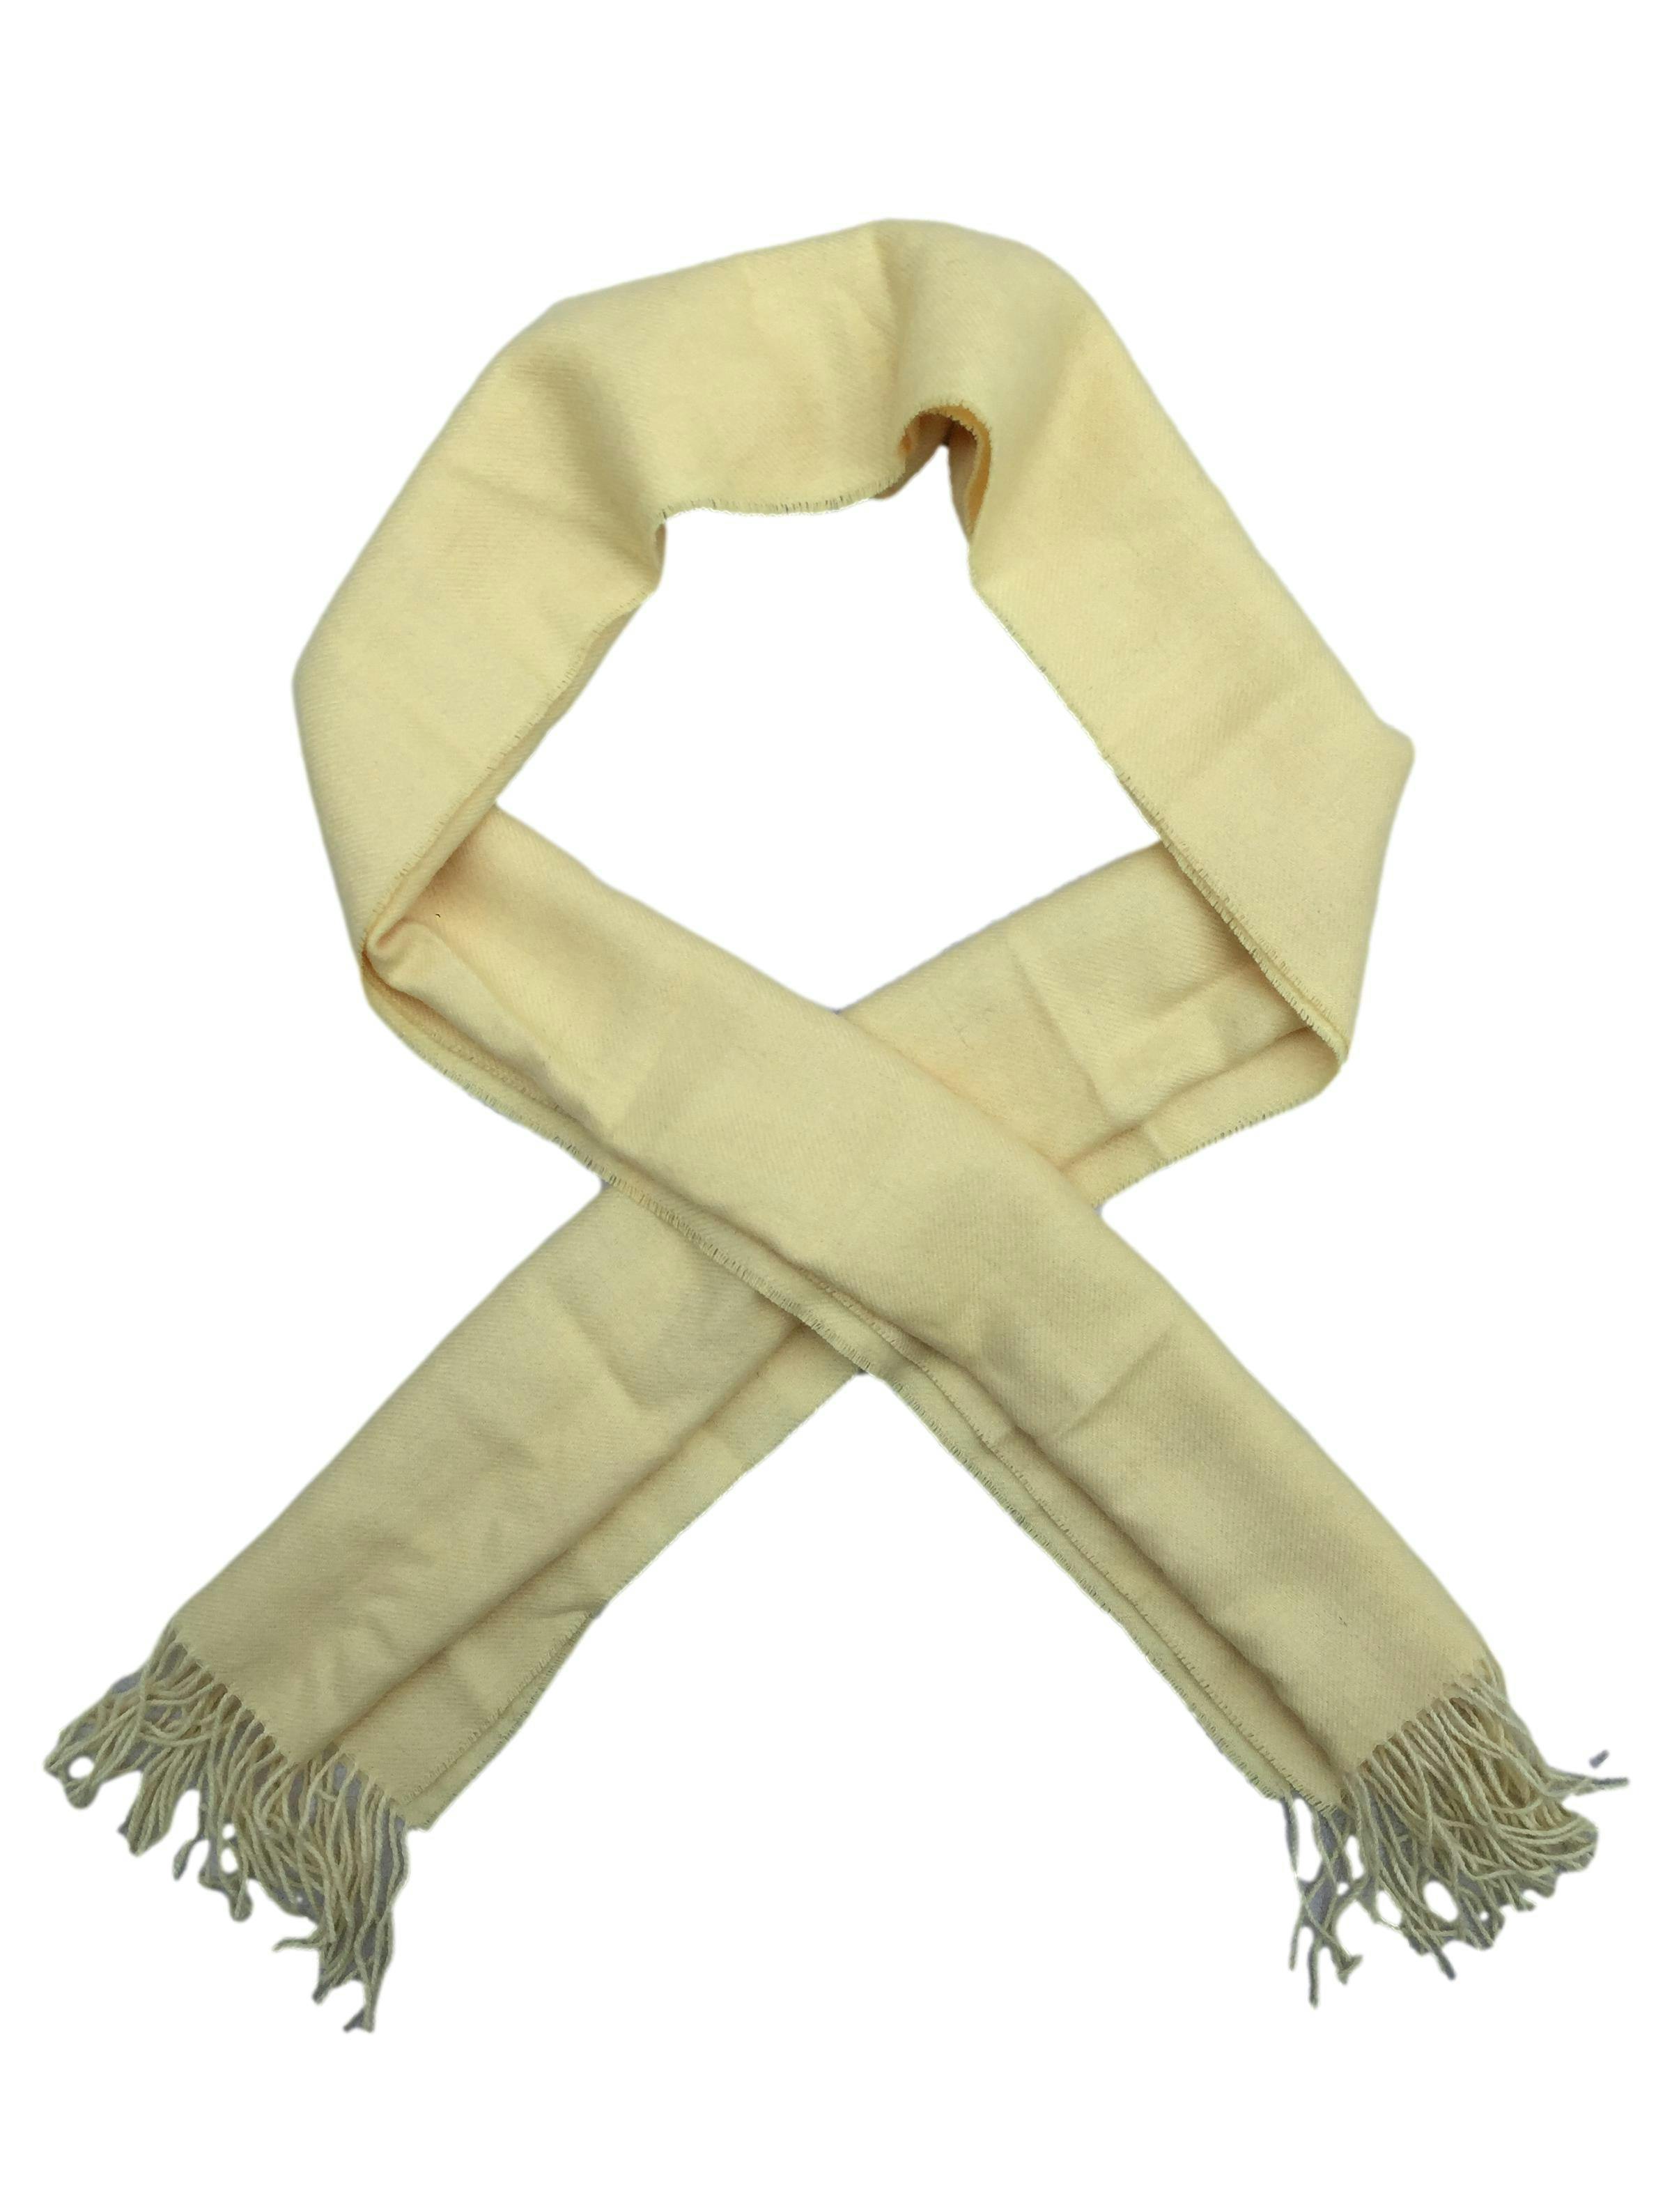 Chalina MFH knits amarillo pastel 100% baby alpaca con flecos en extremos. Medidas 34x160cm. Nueva